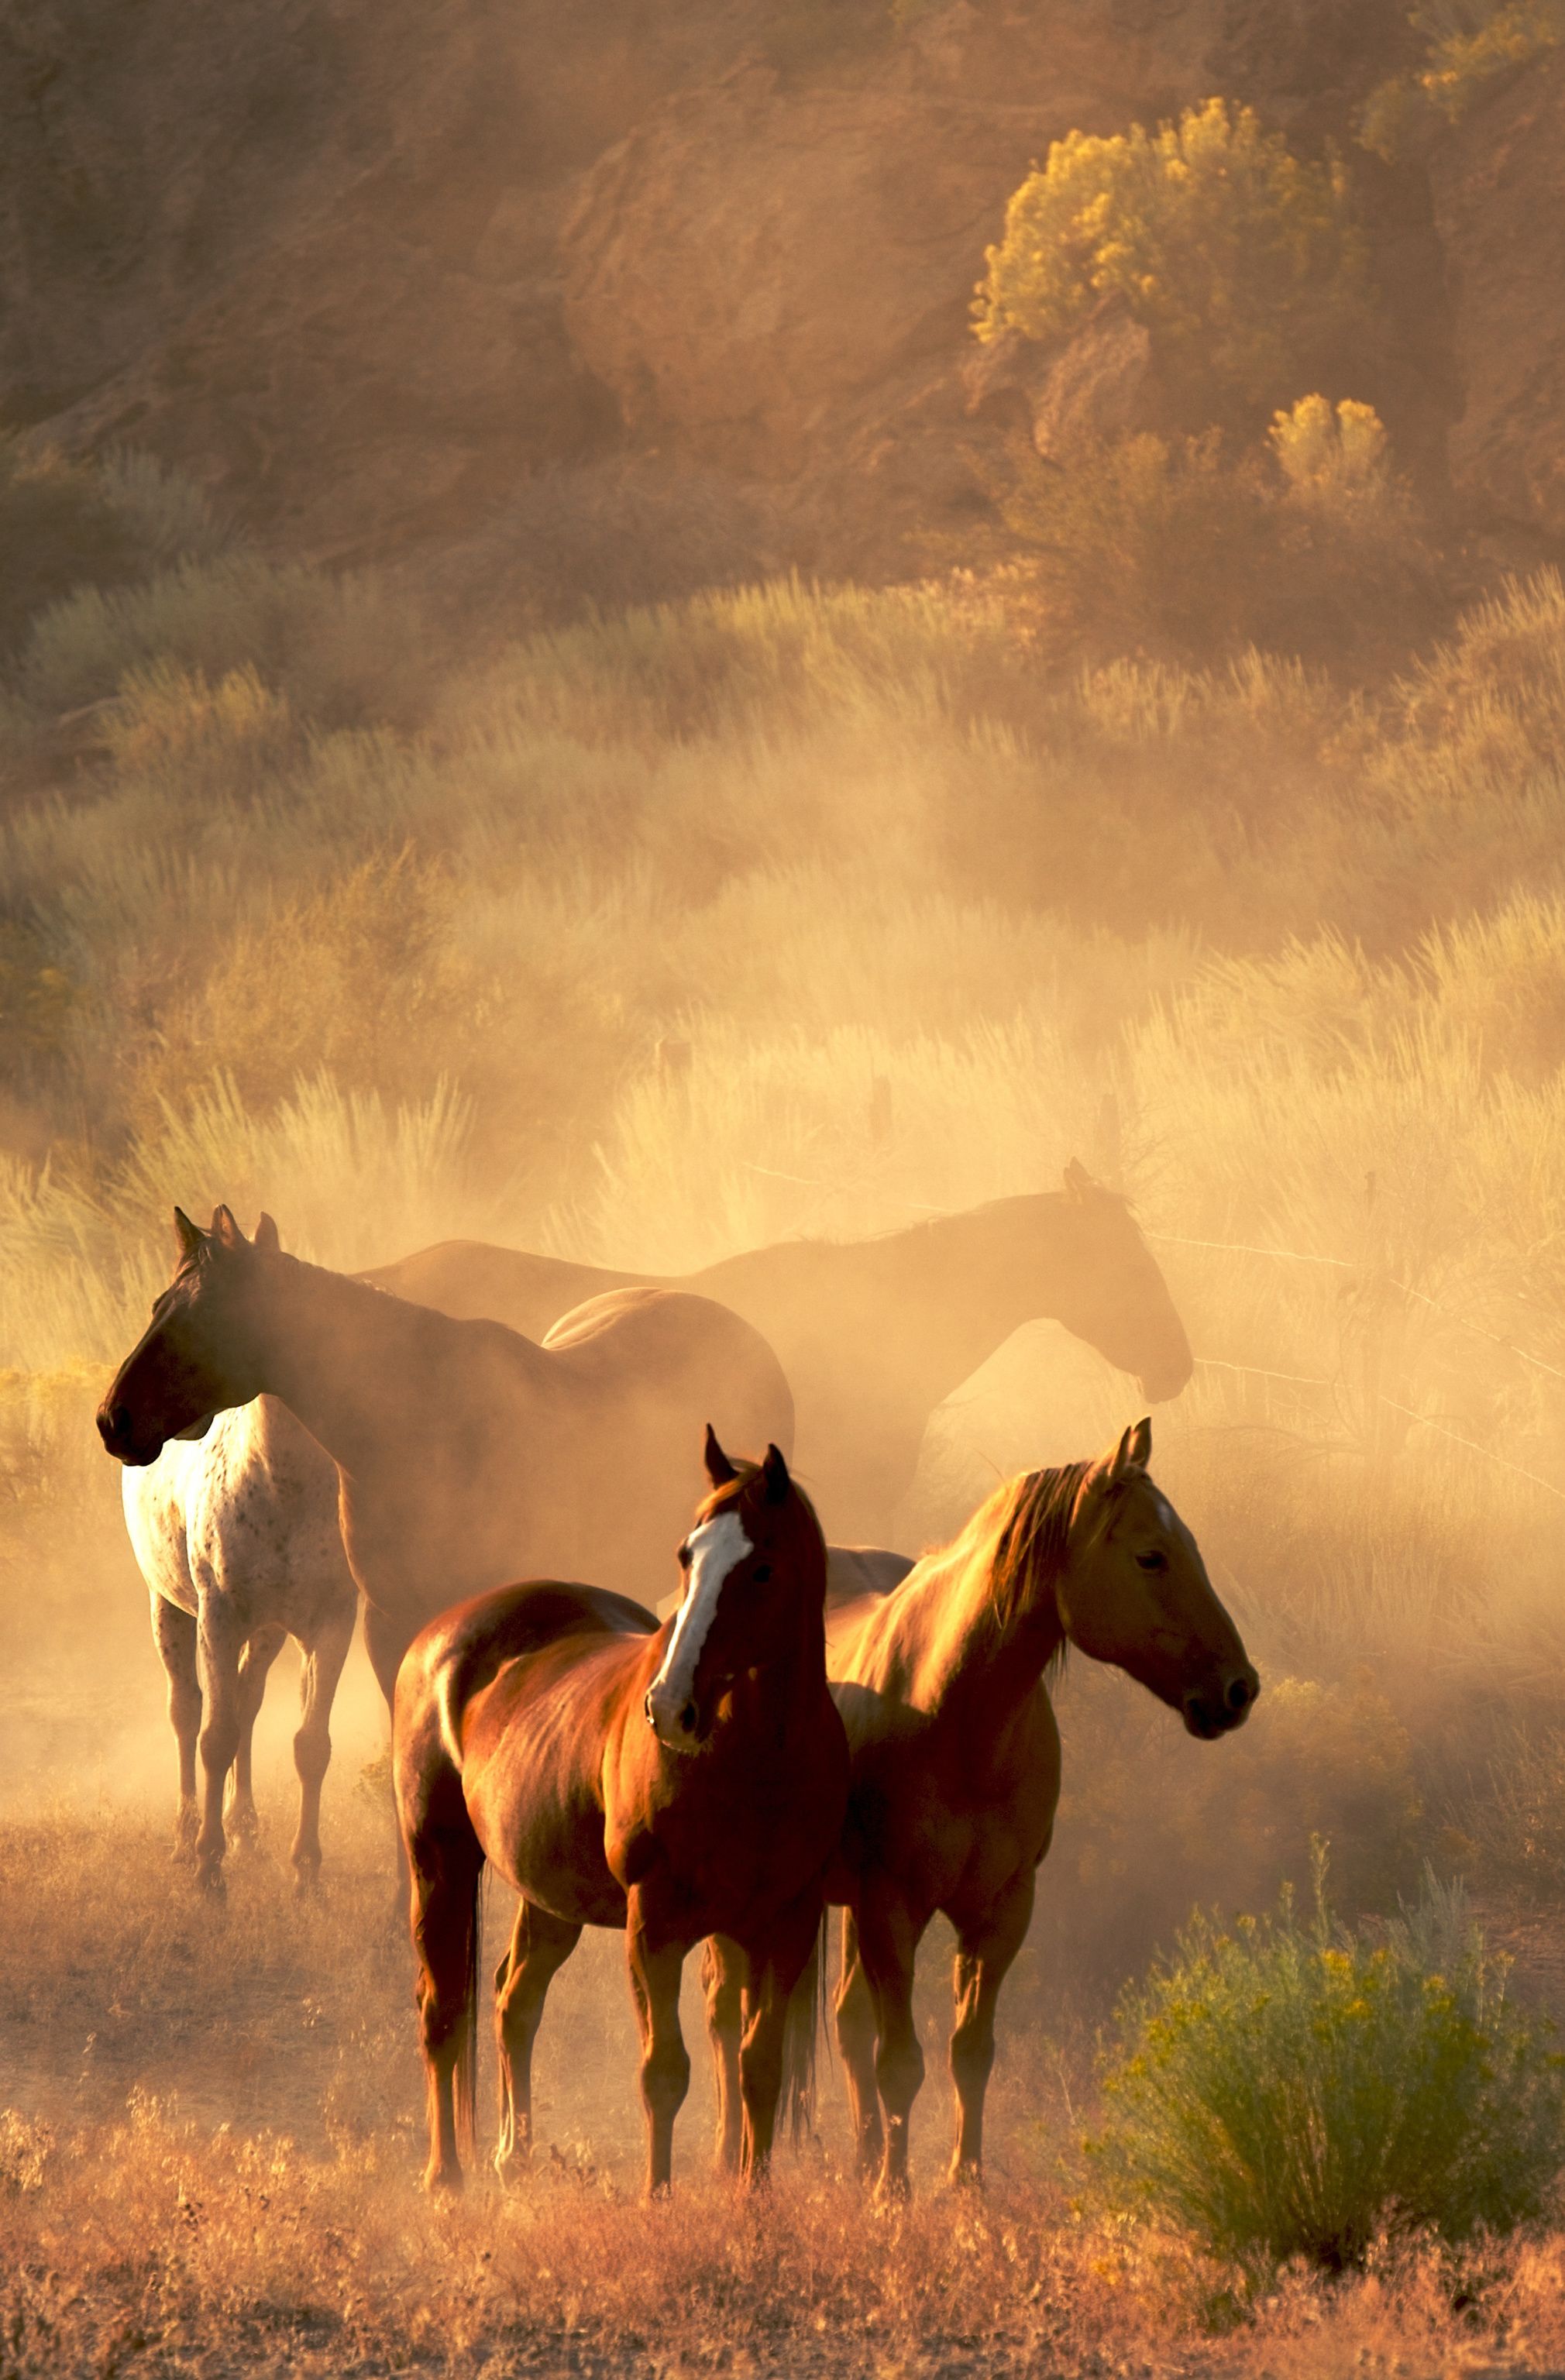 Hình nền ngựa: Hãy thưởng thức bức tranh tự nhiên đầy màu sắc này với hình ảnh ngựa tuyệt đẹp làm hình nền. Sự thanh tao và quyến rũ của loài ngựa sẽ mang lại một cảm giác yên bình và độc đáo cho người xem.